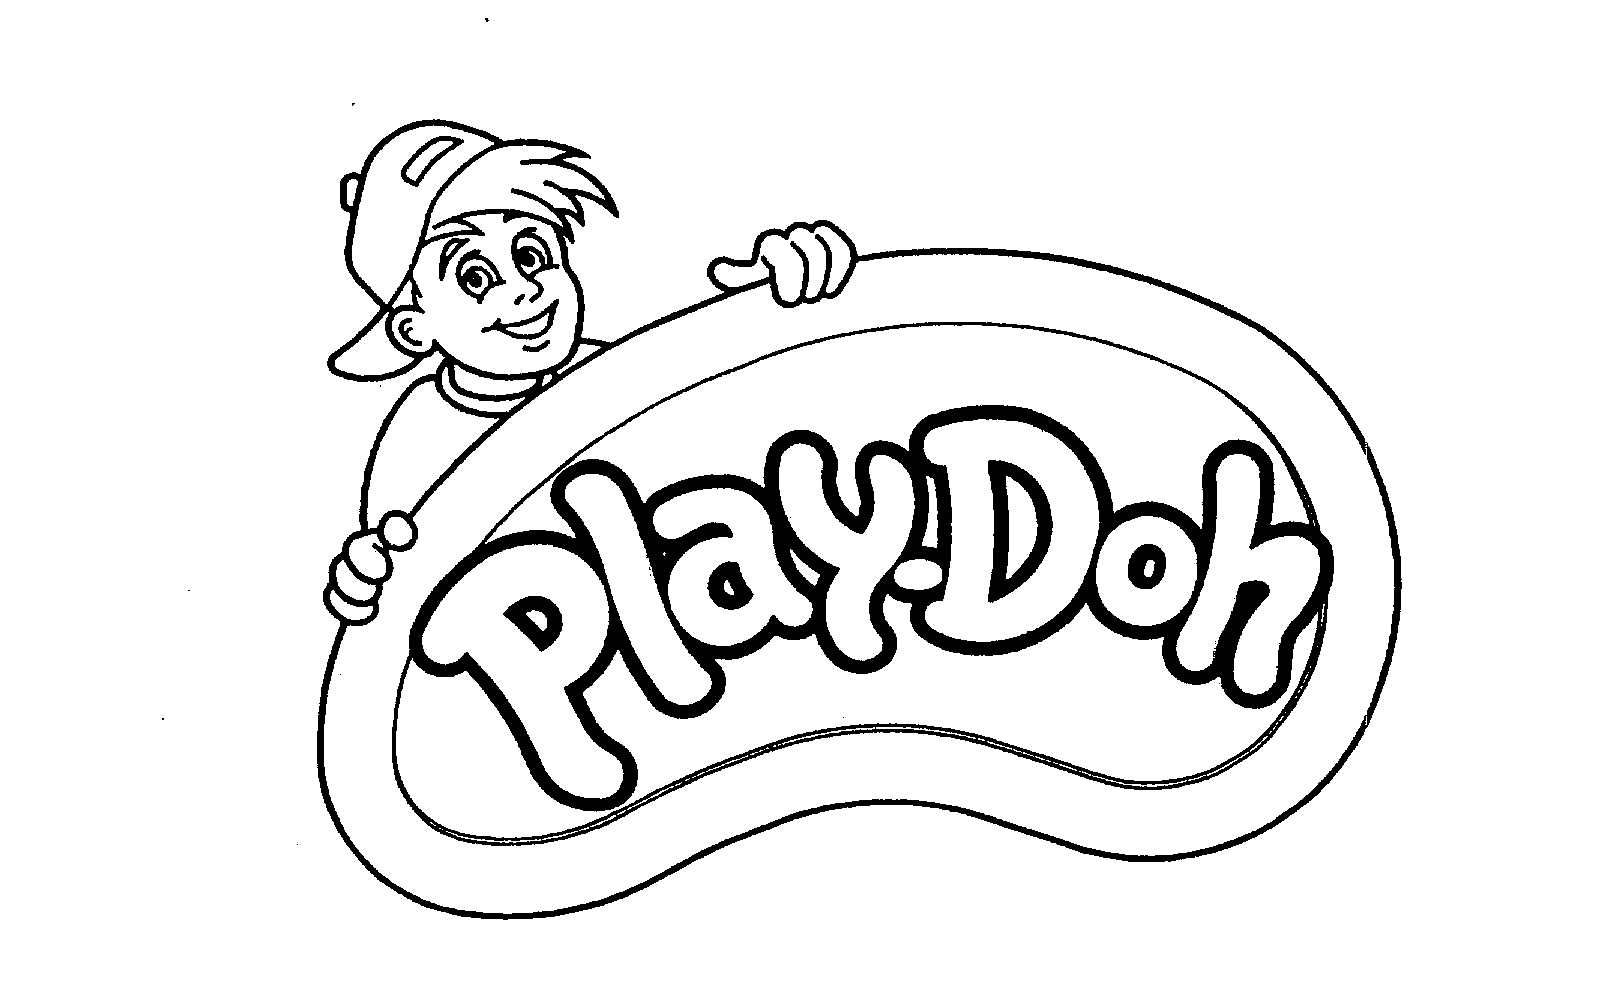 PLAY-DOH - Hasbro, Inc. Trademark Registration